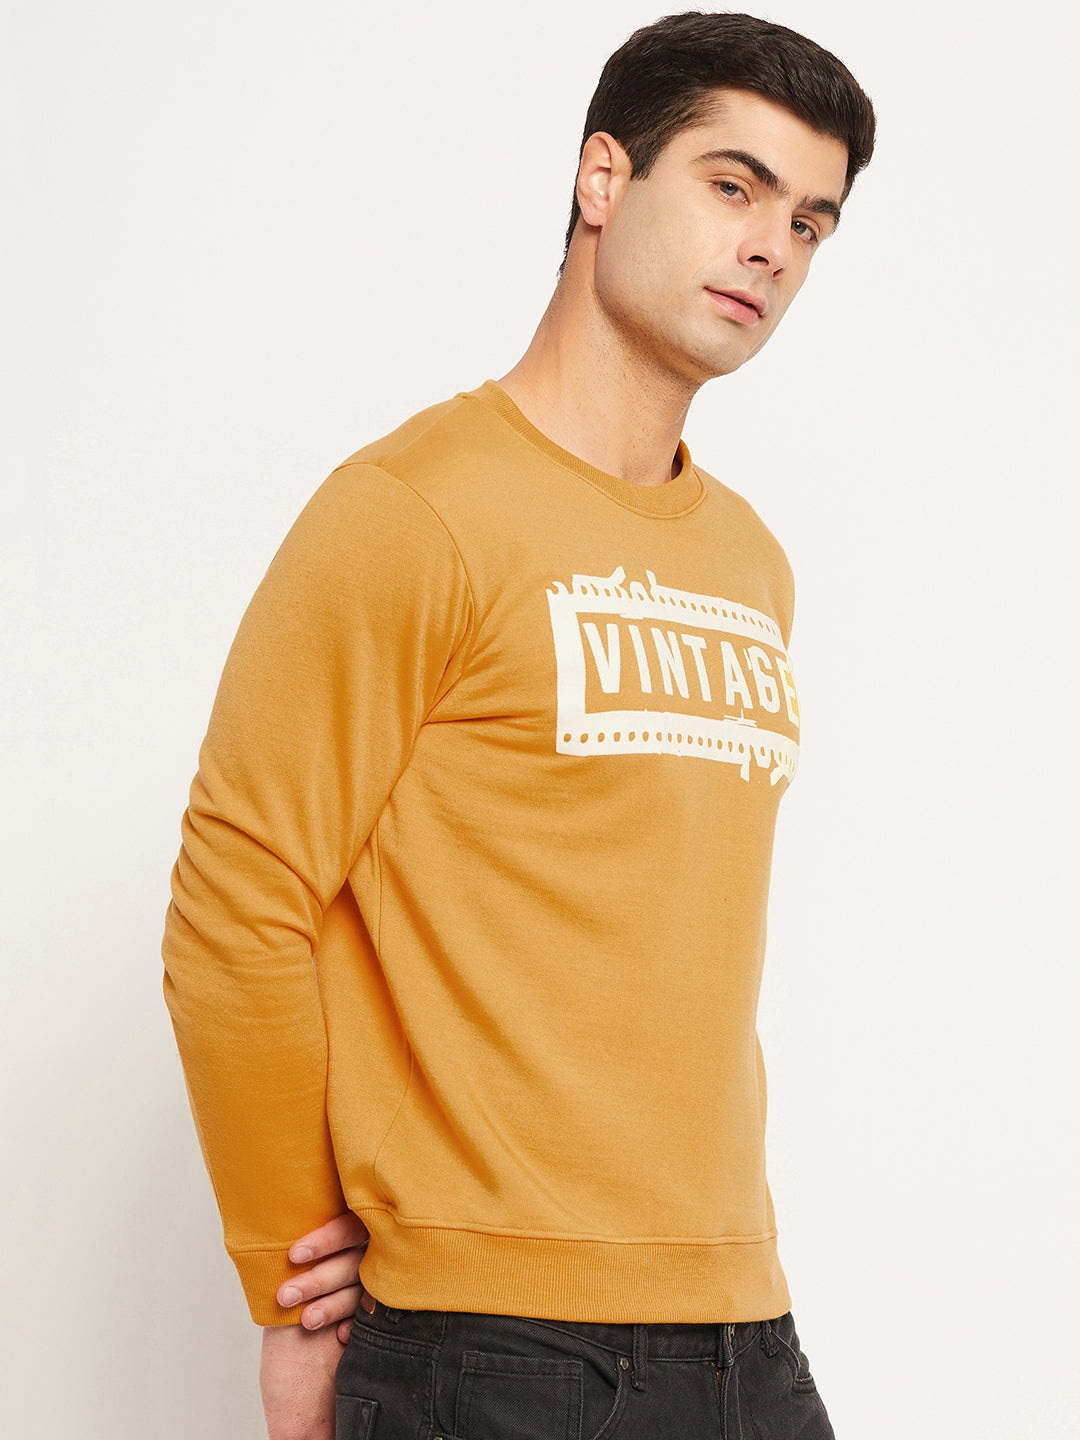 Men's Sweatshirt Mustard